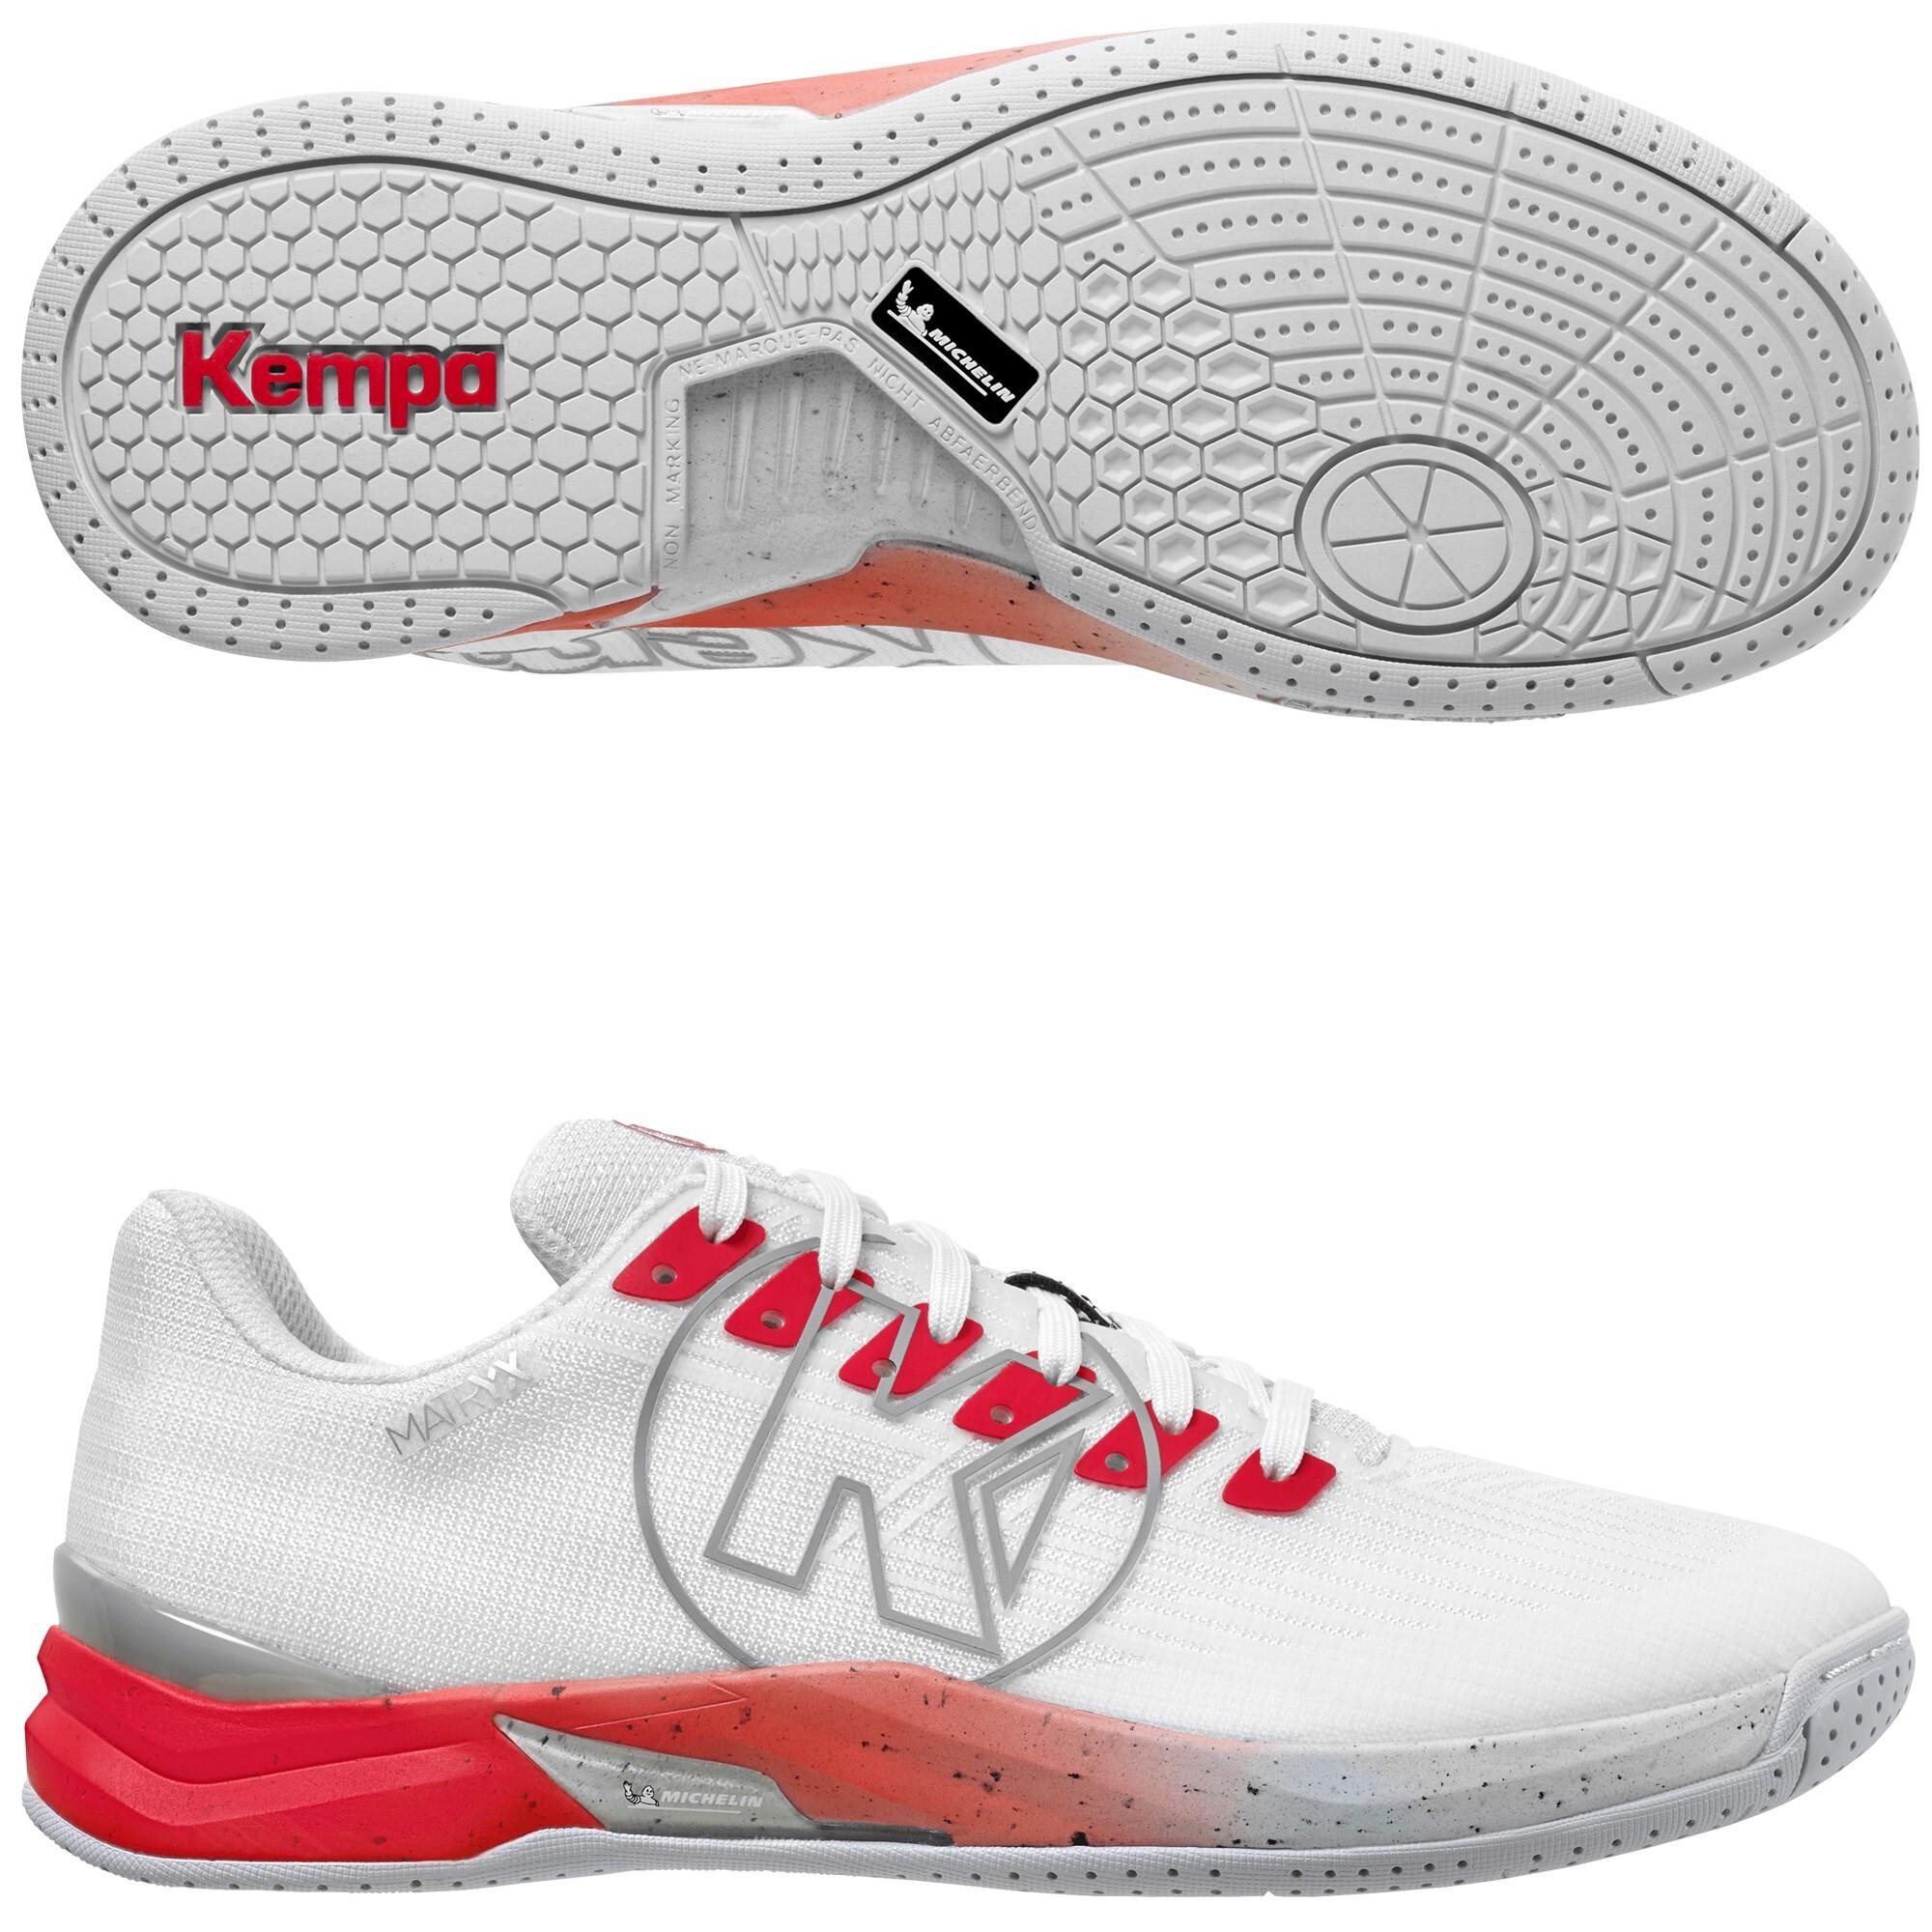 Kempa  scarpe indoor   attack pro 2.0 